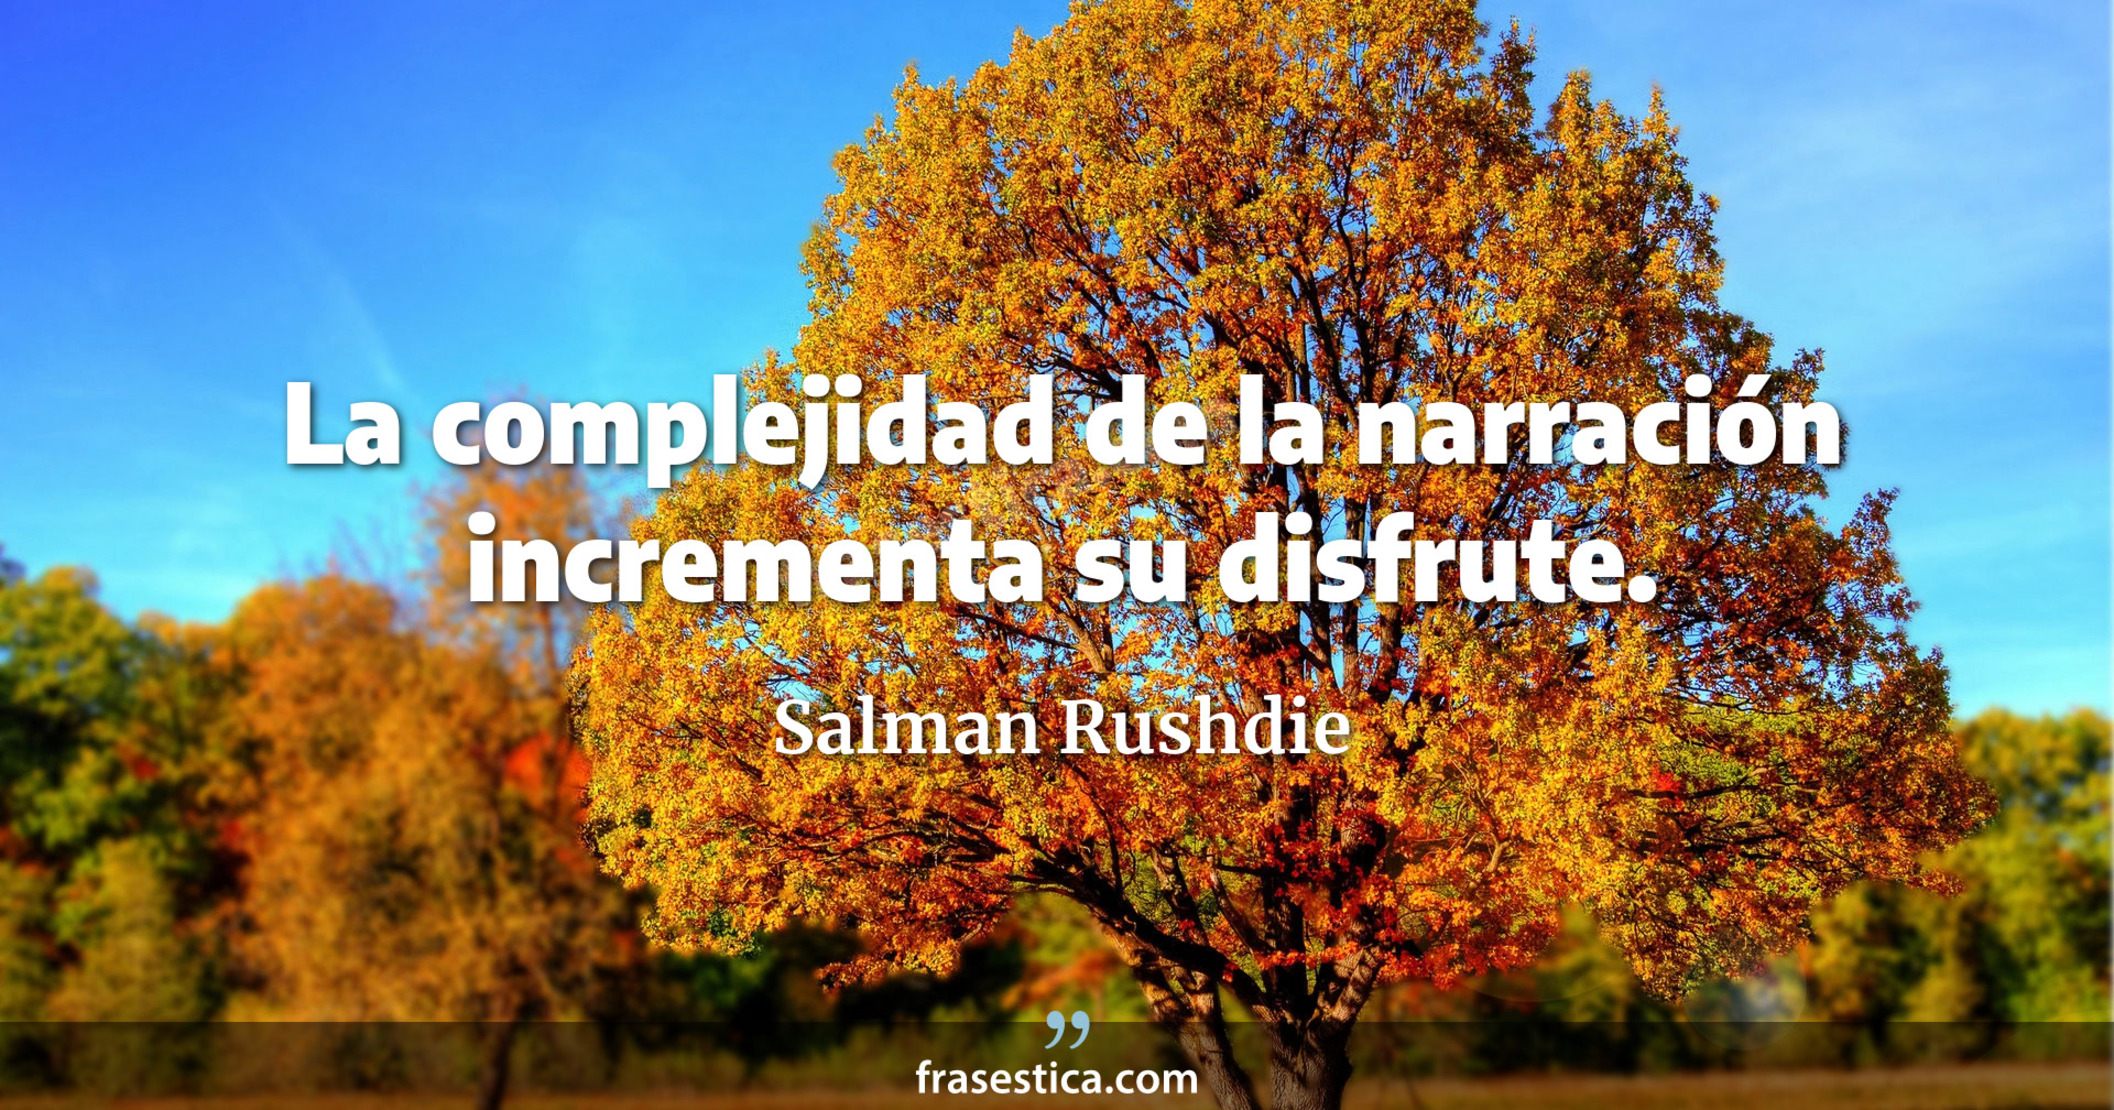 La complejidad de la narración incrementa su disfrute. - Salman Rushdie